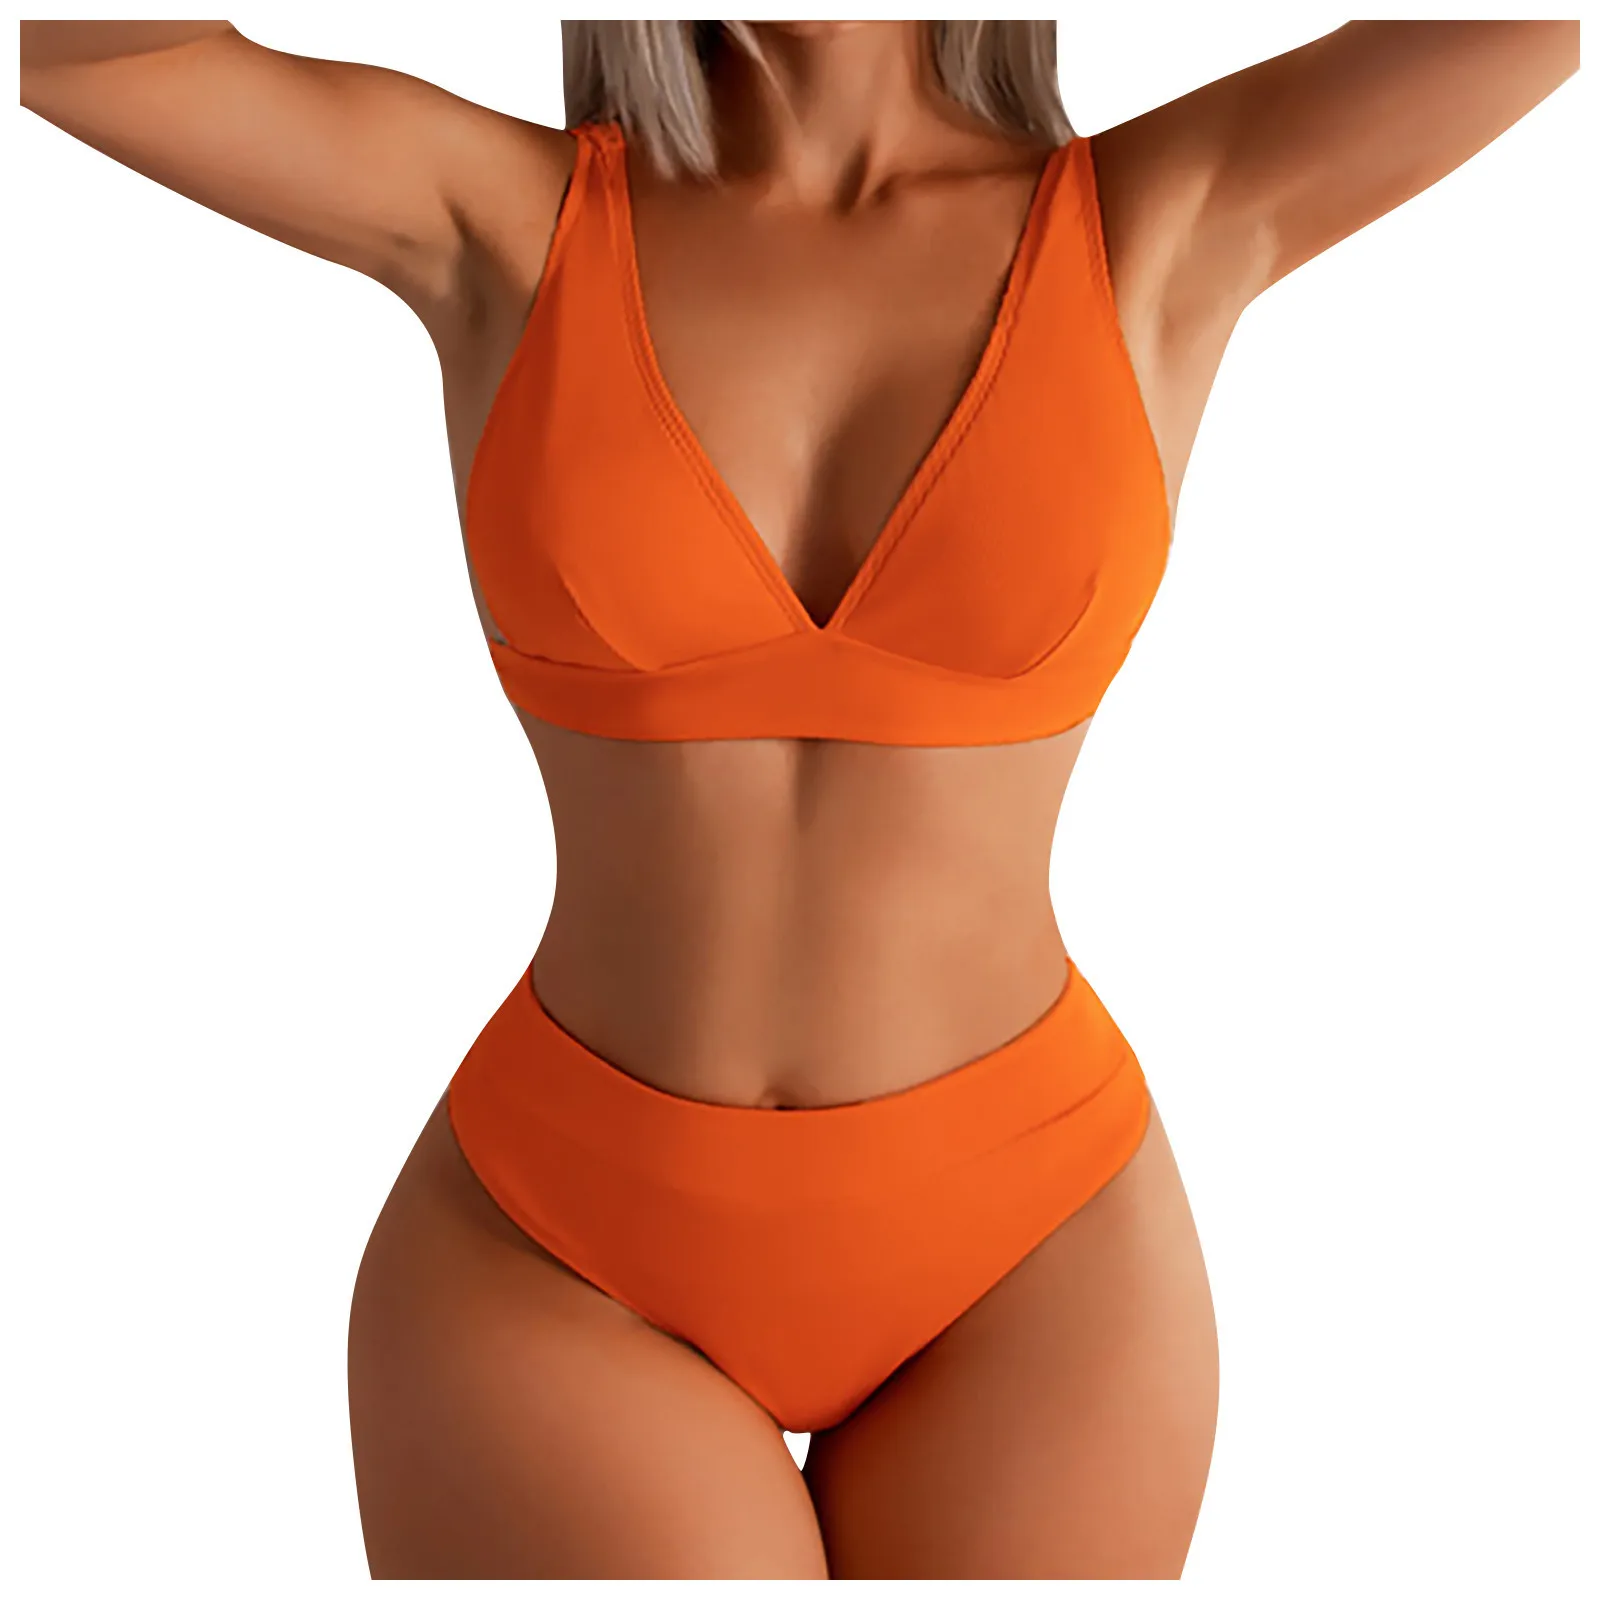 2022 Women Solid Color High Waist Two Pieces Bikini Set Swimsuit Female Split Beachwear Swimwear Bathing Suit Without Steel Bra designer bikini sets